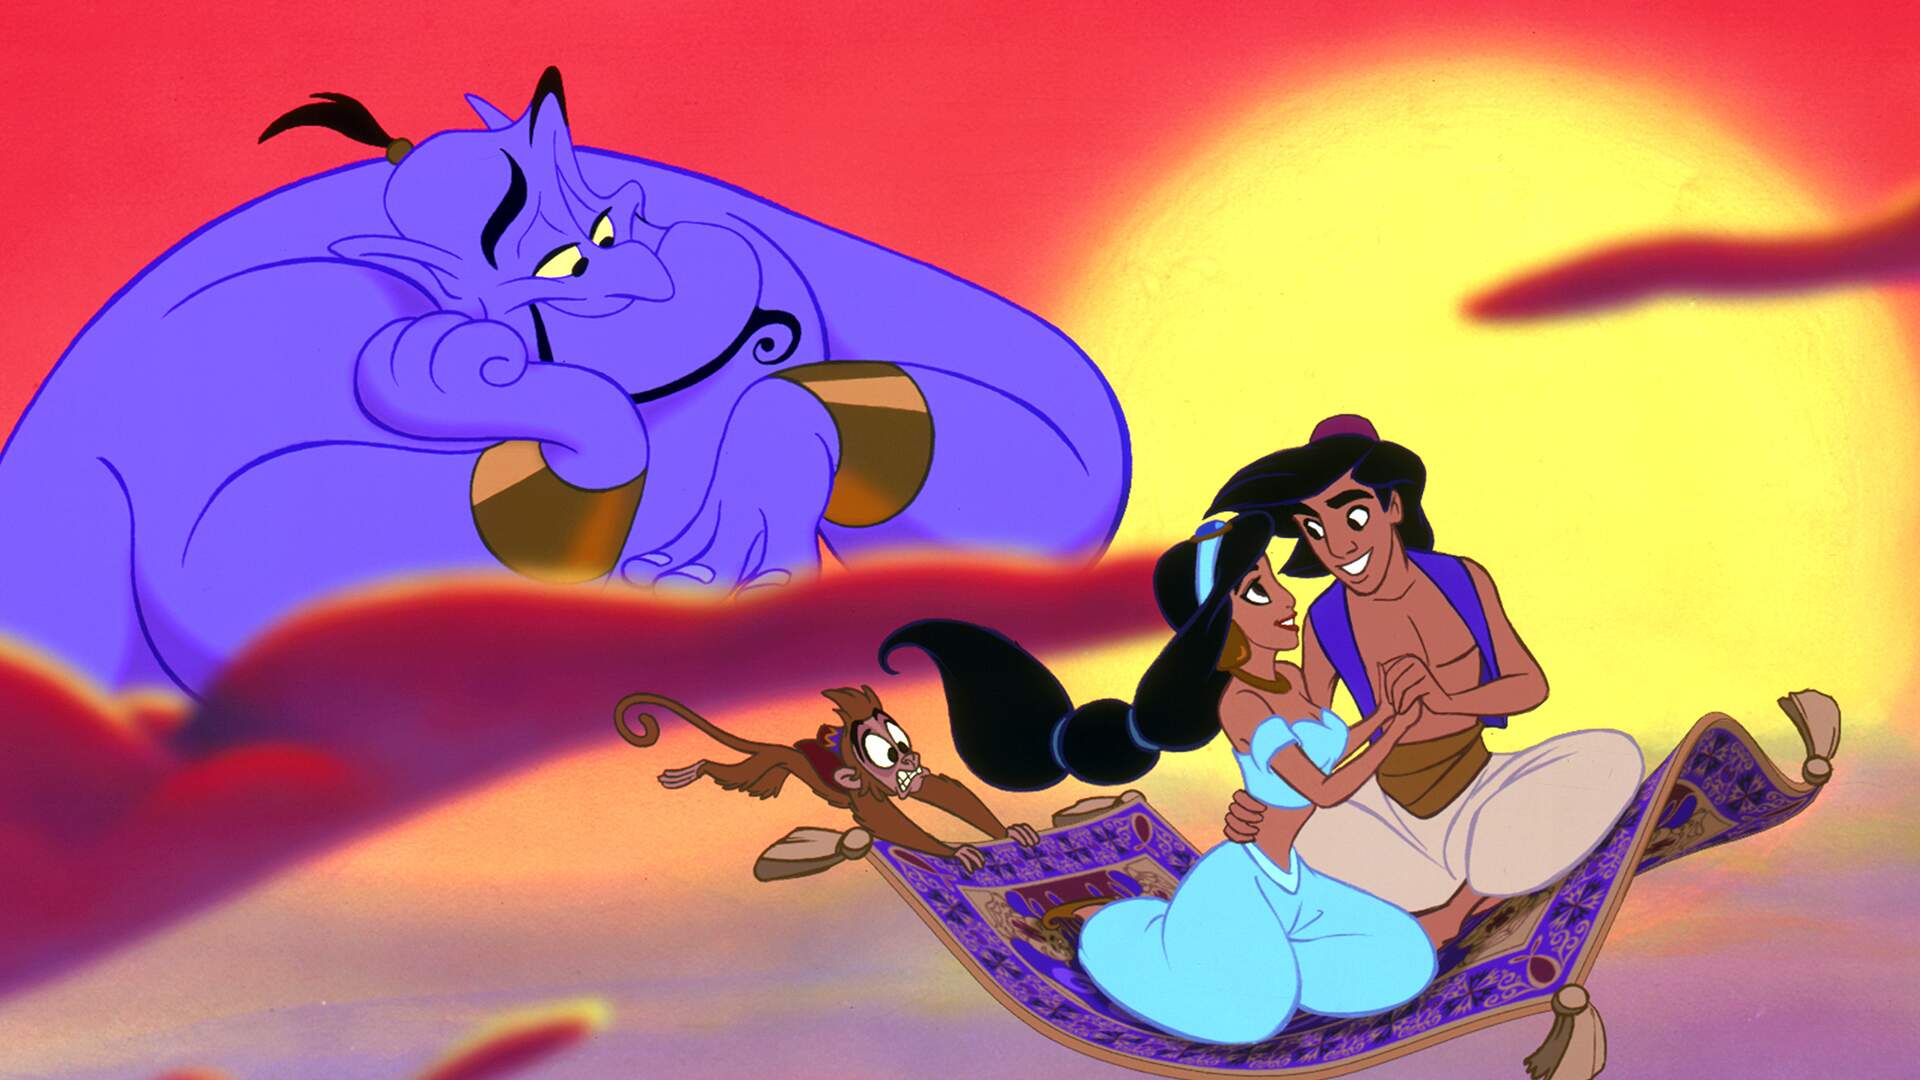 Aladdin - Alladin e Jasmine 4 PNG Imagens e Moldes.com.br